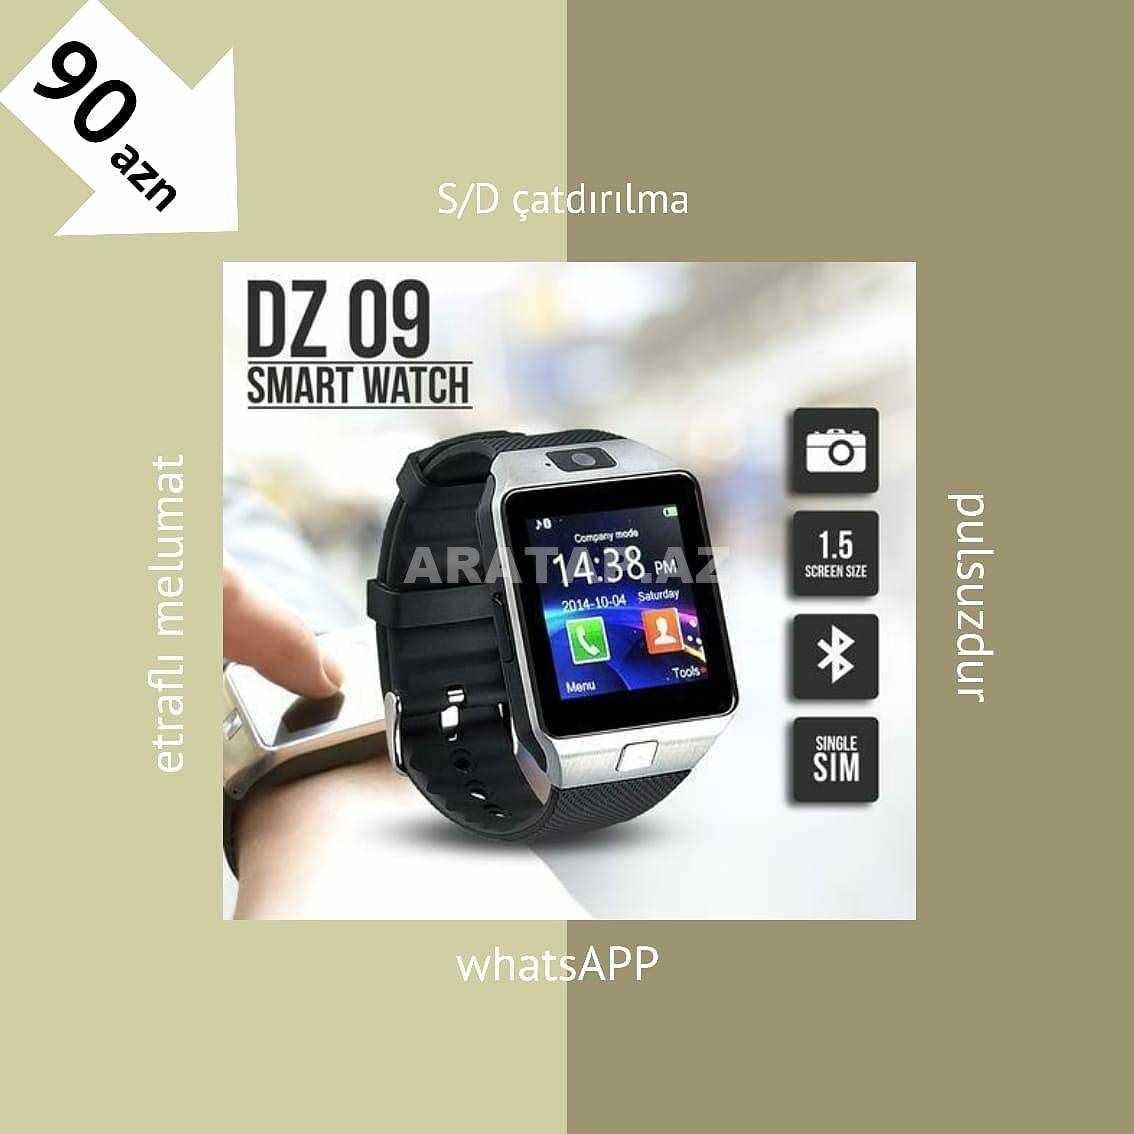 DZ 09 smart watch